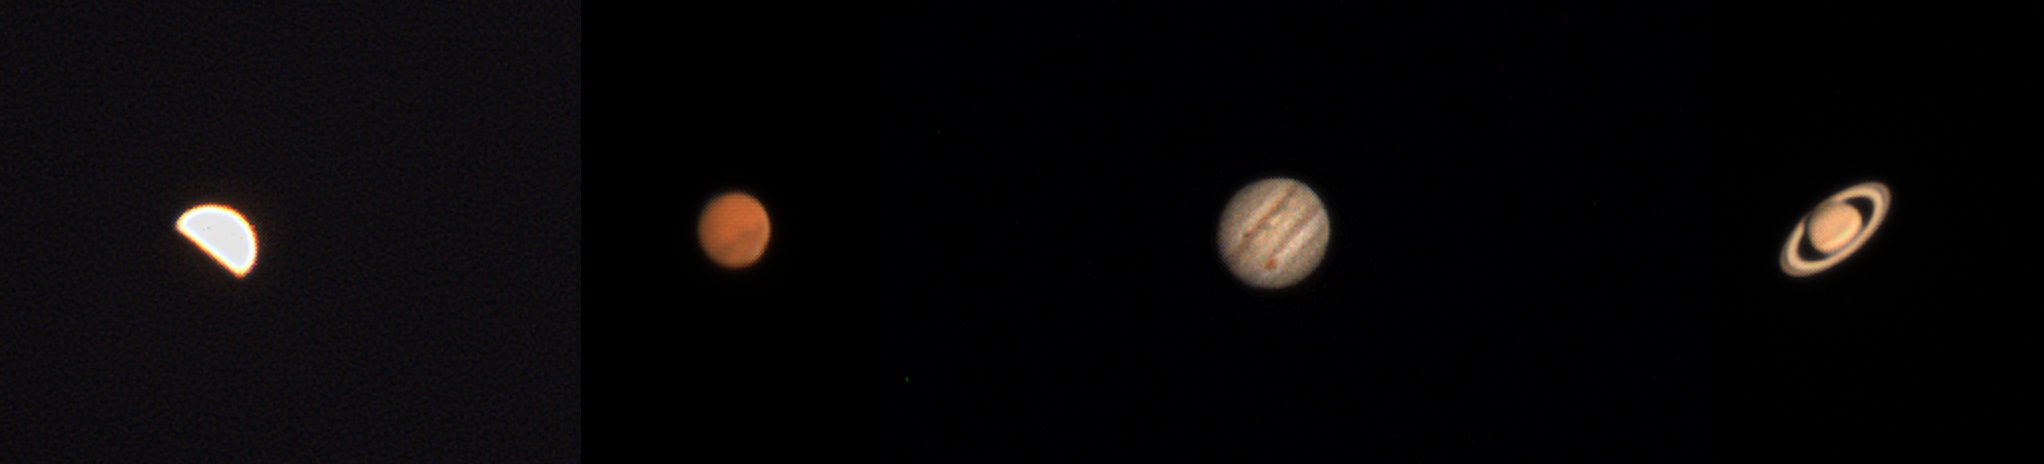 Venus Mars Jupiter Saturn am 18.8.2018 